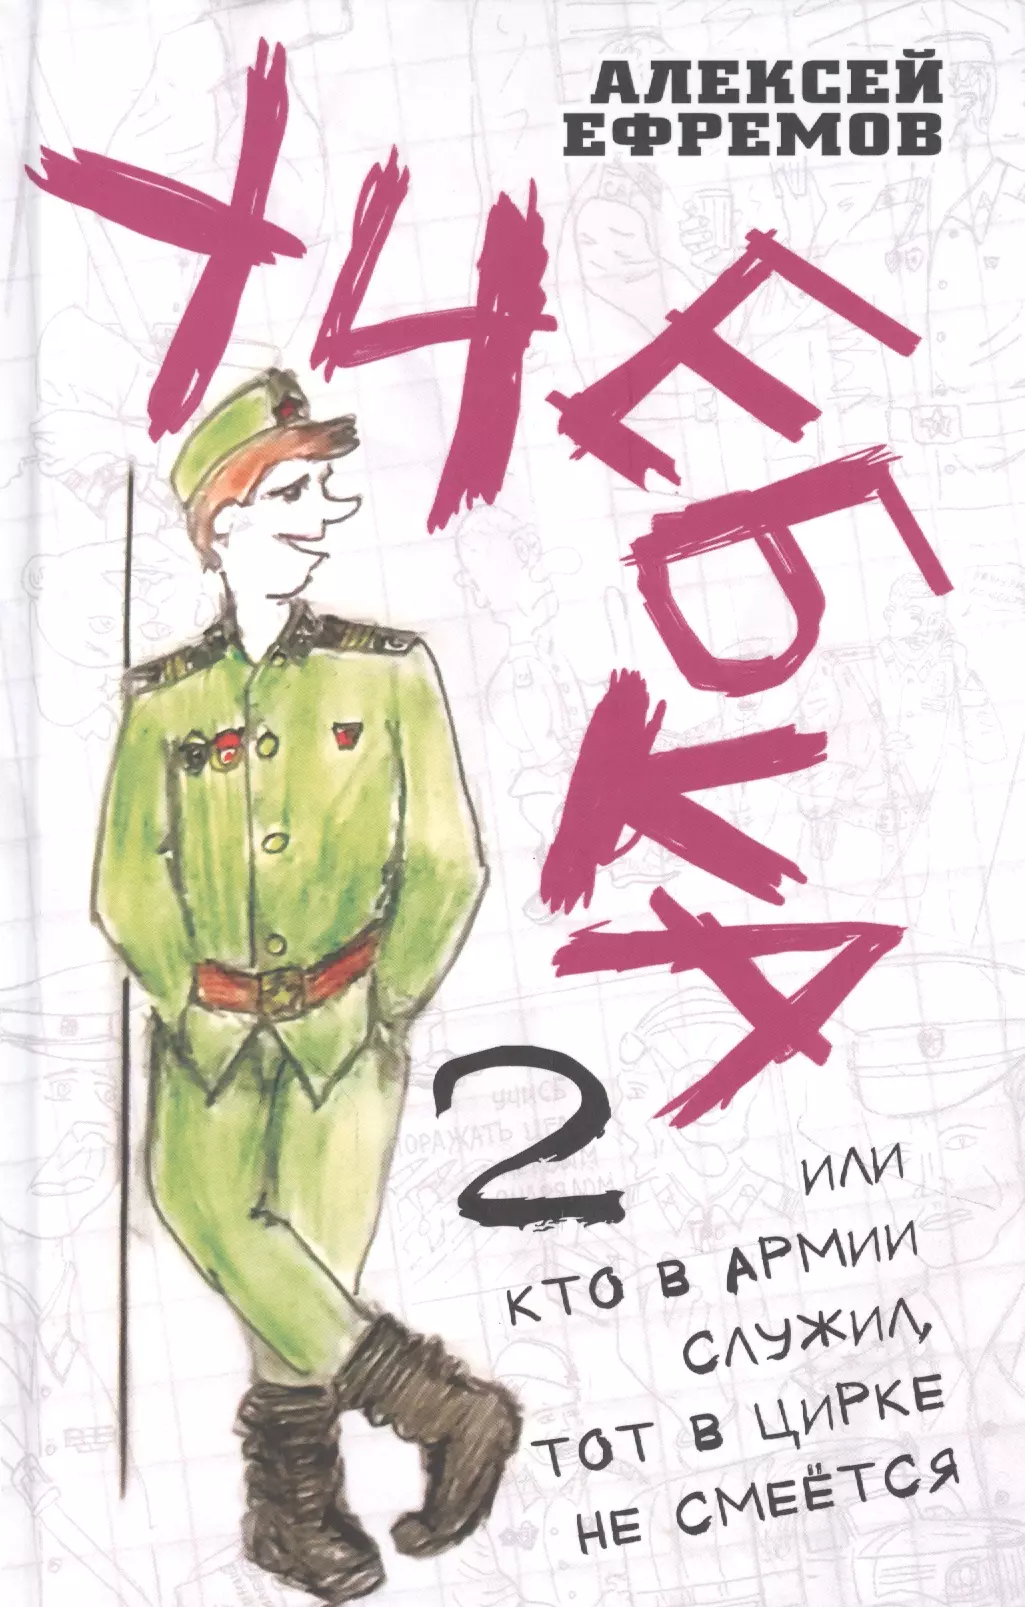 Ефремов Андрей Петрович - Учебка-2, или Кто в армии служил, тот в цирке не смеётся!